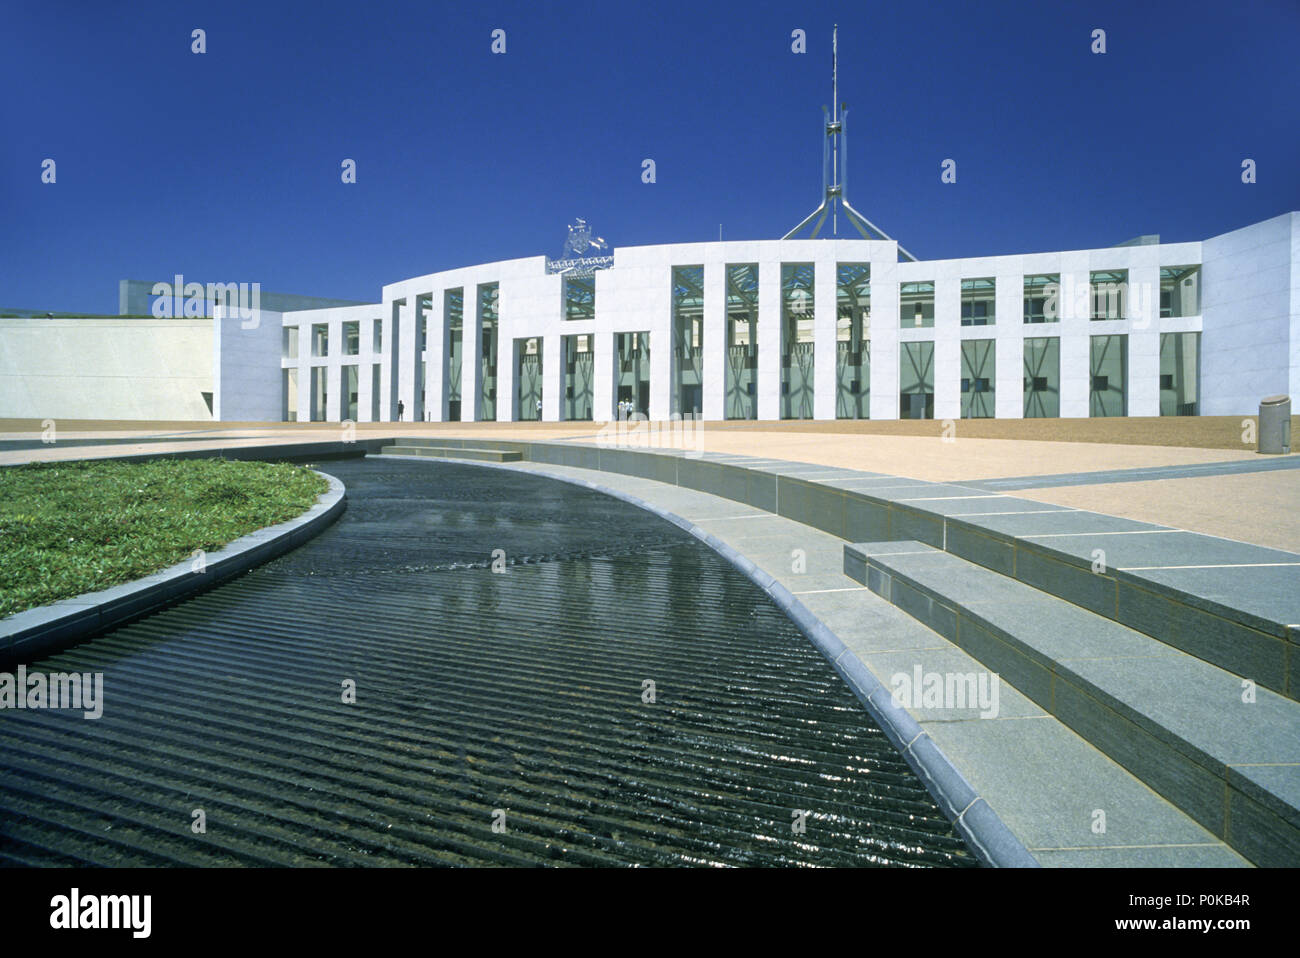 1995 BÂTIMENT DU PARLEMENT HISTORIQUE DE LA CAPITALE DE L'Australie Canberra Australie TERRITOIRE CAPITOL Banque D'Images